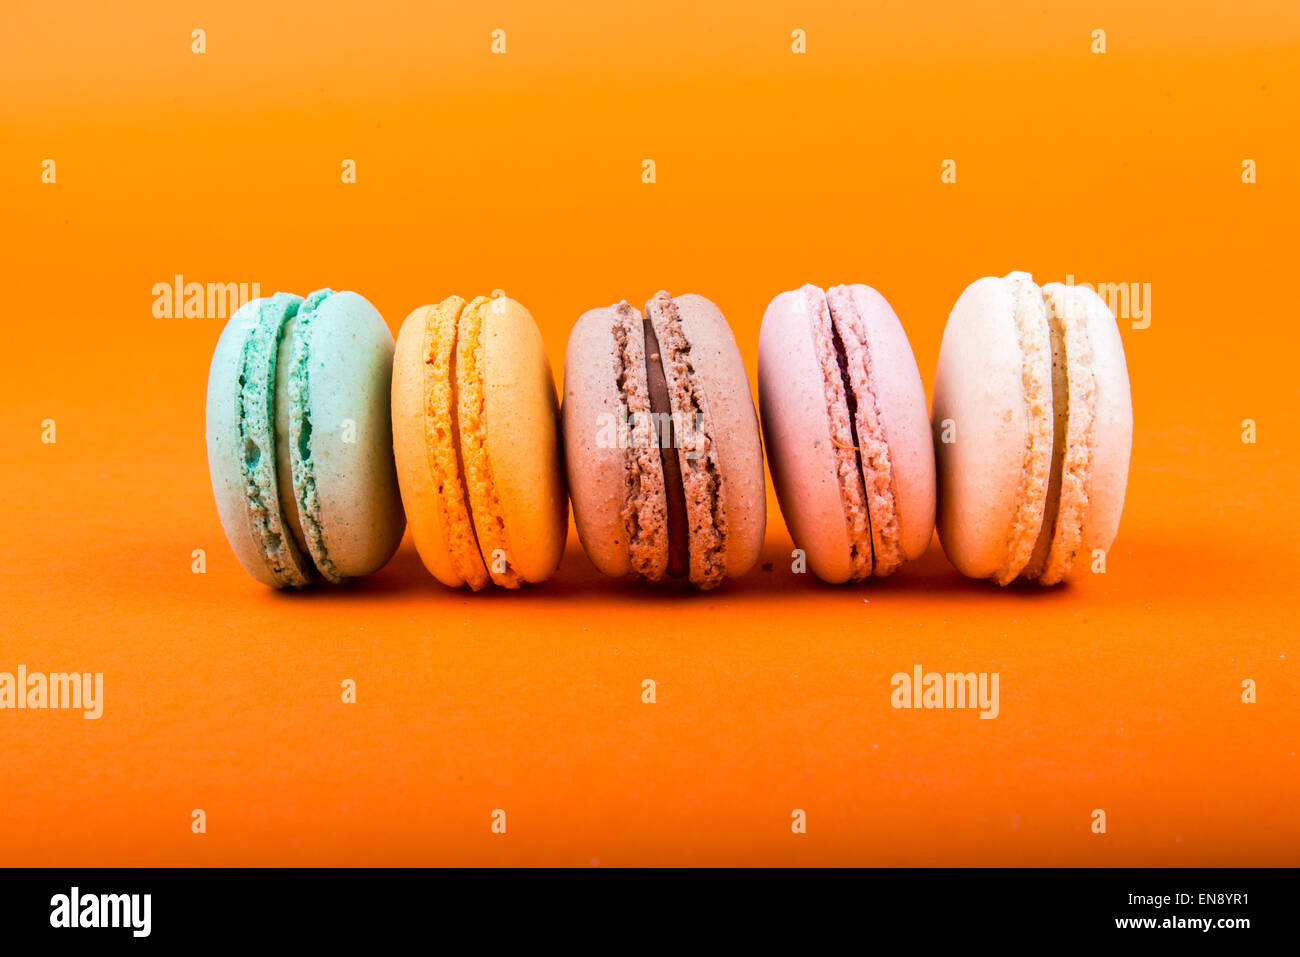 Satz von Macarons auf orangem Hintergrund isoliert Stockfoto